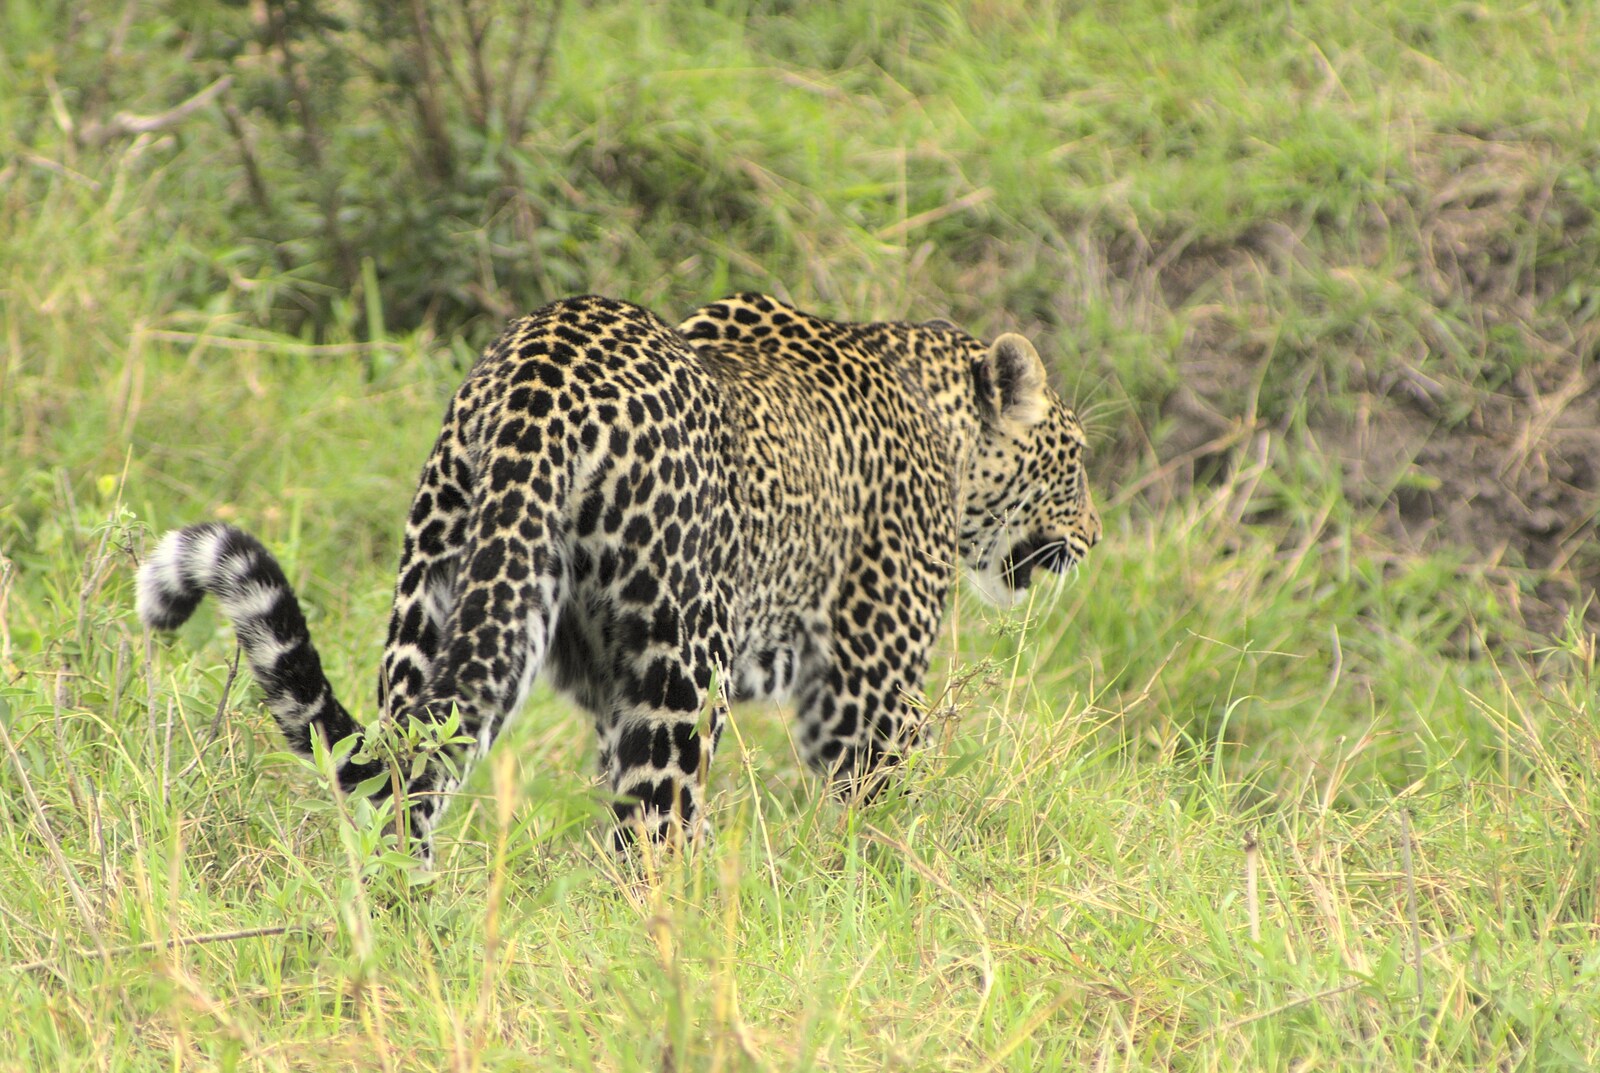 Leopard in action from Maasai Mara Safari and a Maasai Village, Ololaimutia, Kenya - 5th November 2010